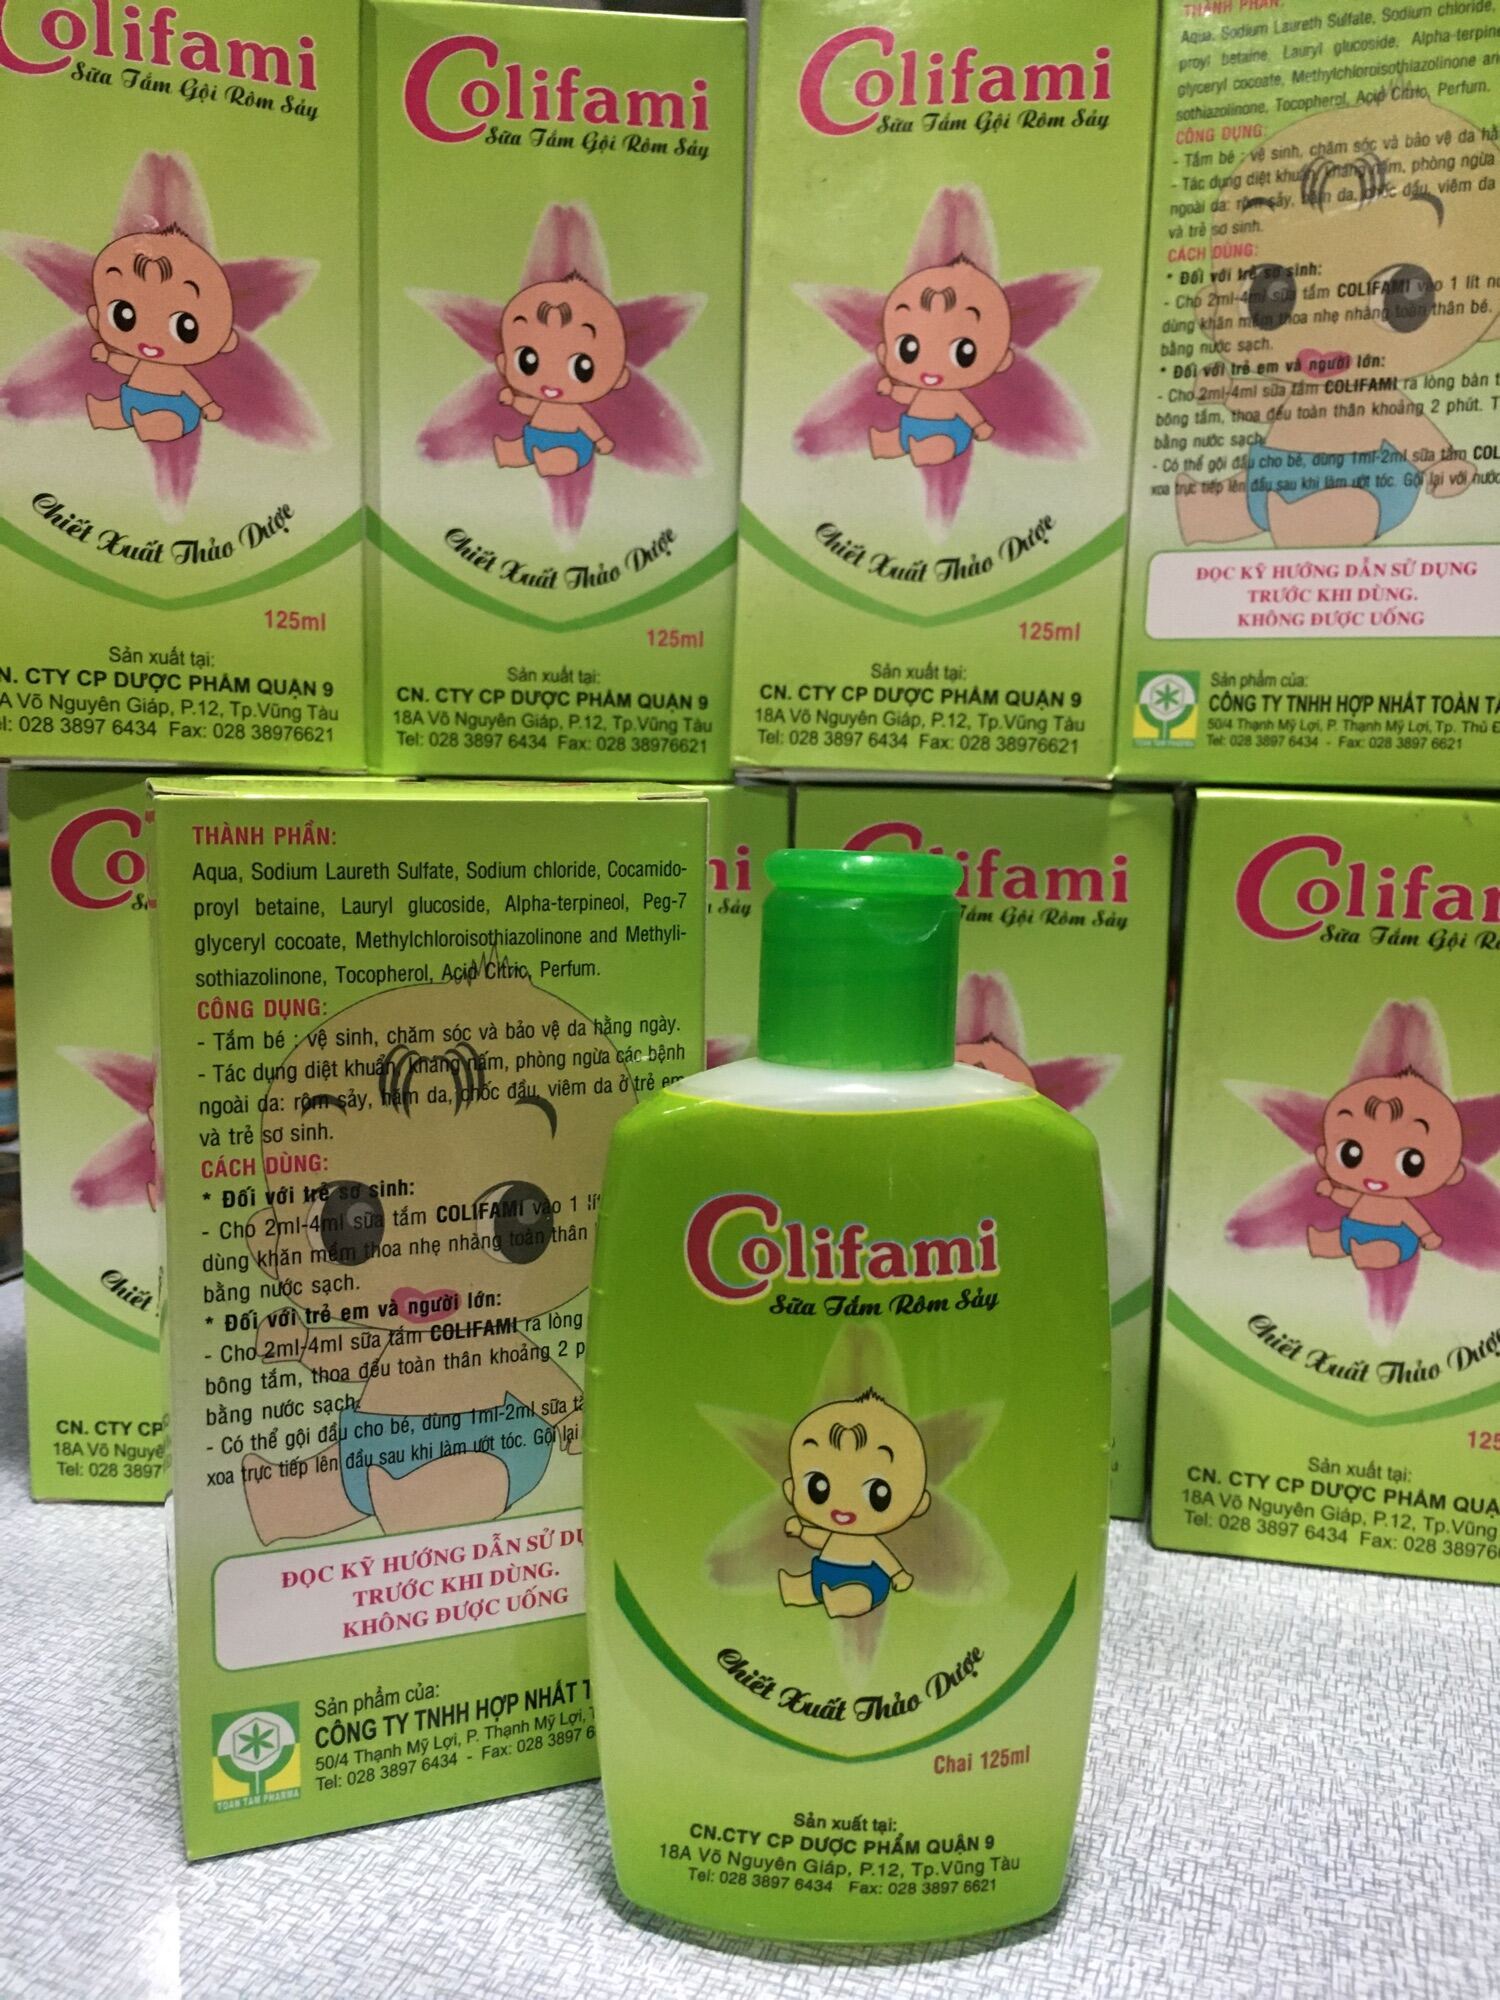 Sữa tắm Rôm sảy trẻ em Chiết xuất từ thảo dược Colifami 125ml